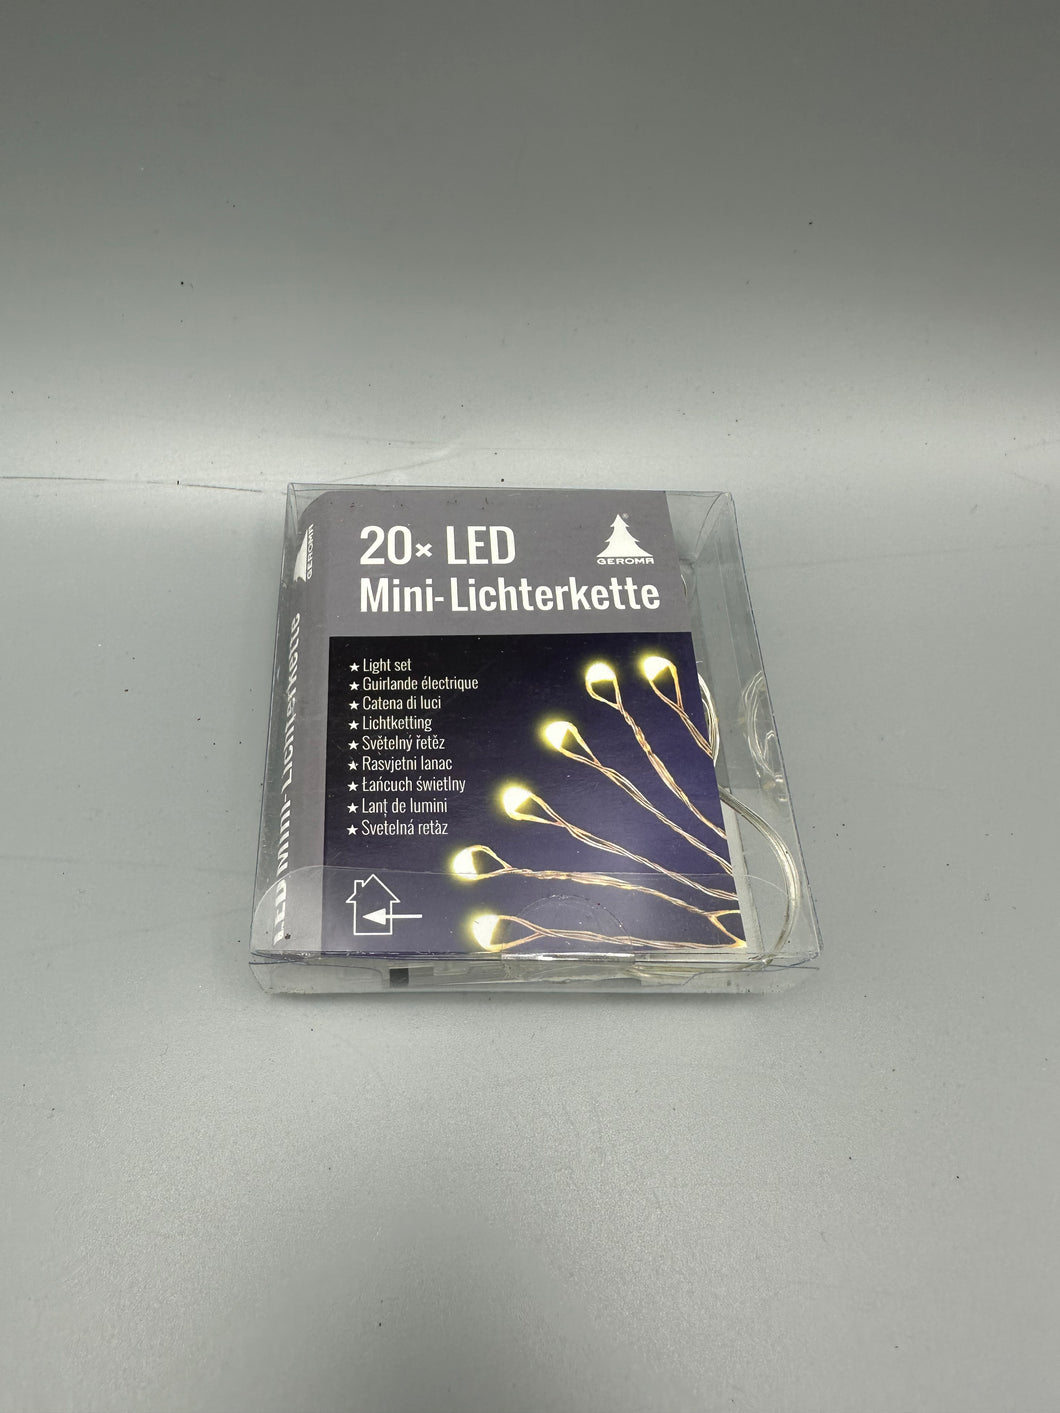 LED Lichterkette 20 LED